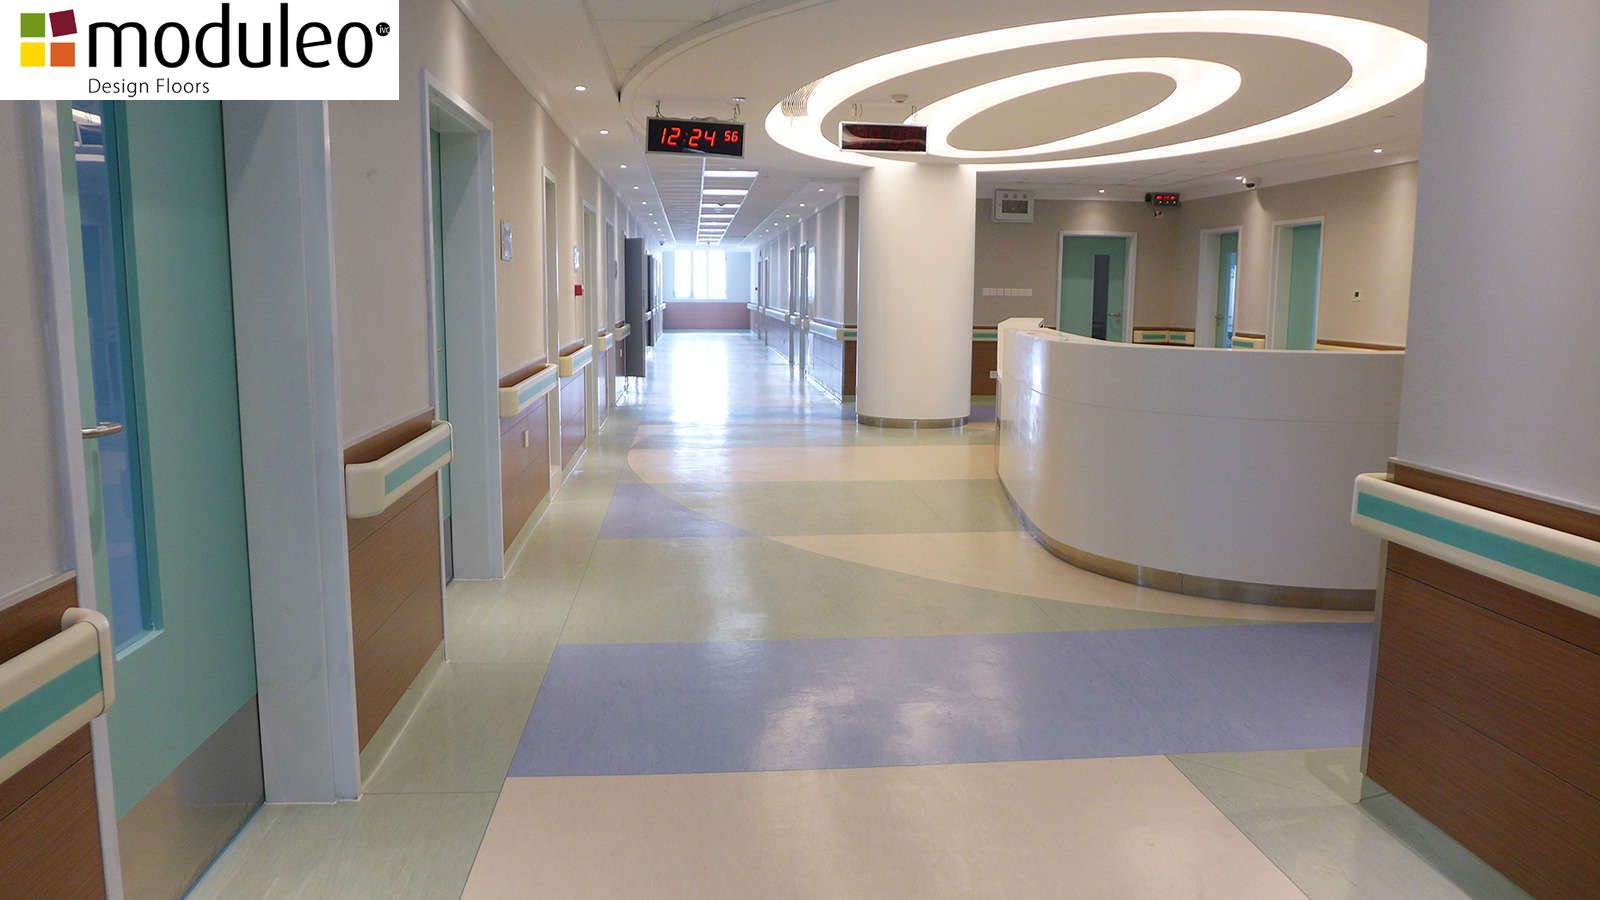 Sàn Vinyl cao cấp Moduleo sử dụng tại hành lang, sảnh bệnh viện. Với đa dạng mẫu mã sản phẩm